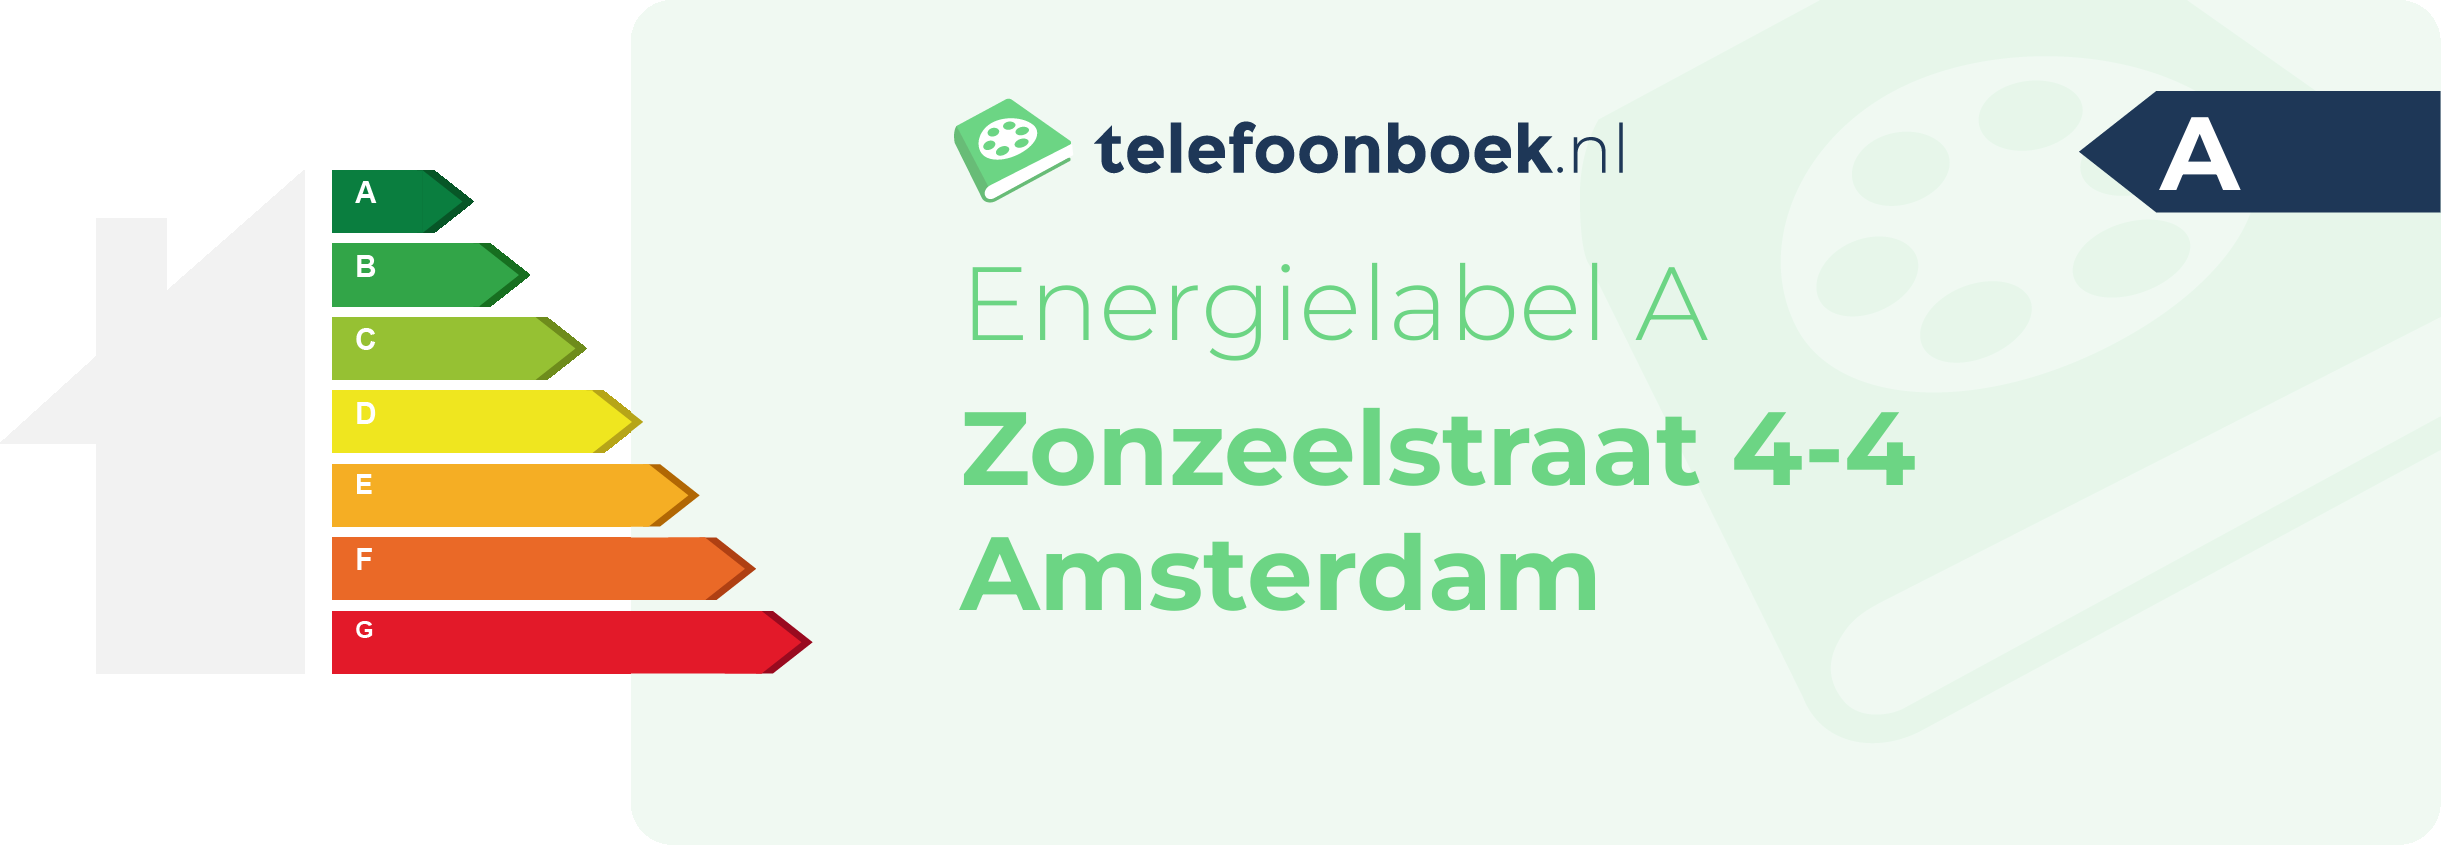 Energielabel Zonzeelstraat 4-4 Amsterdam